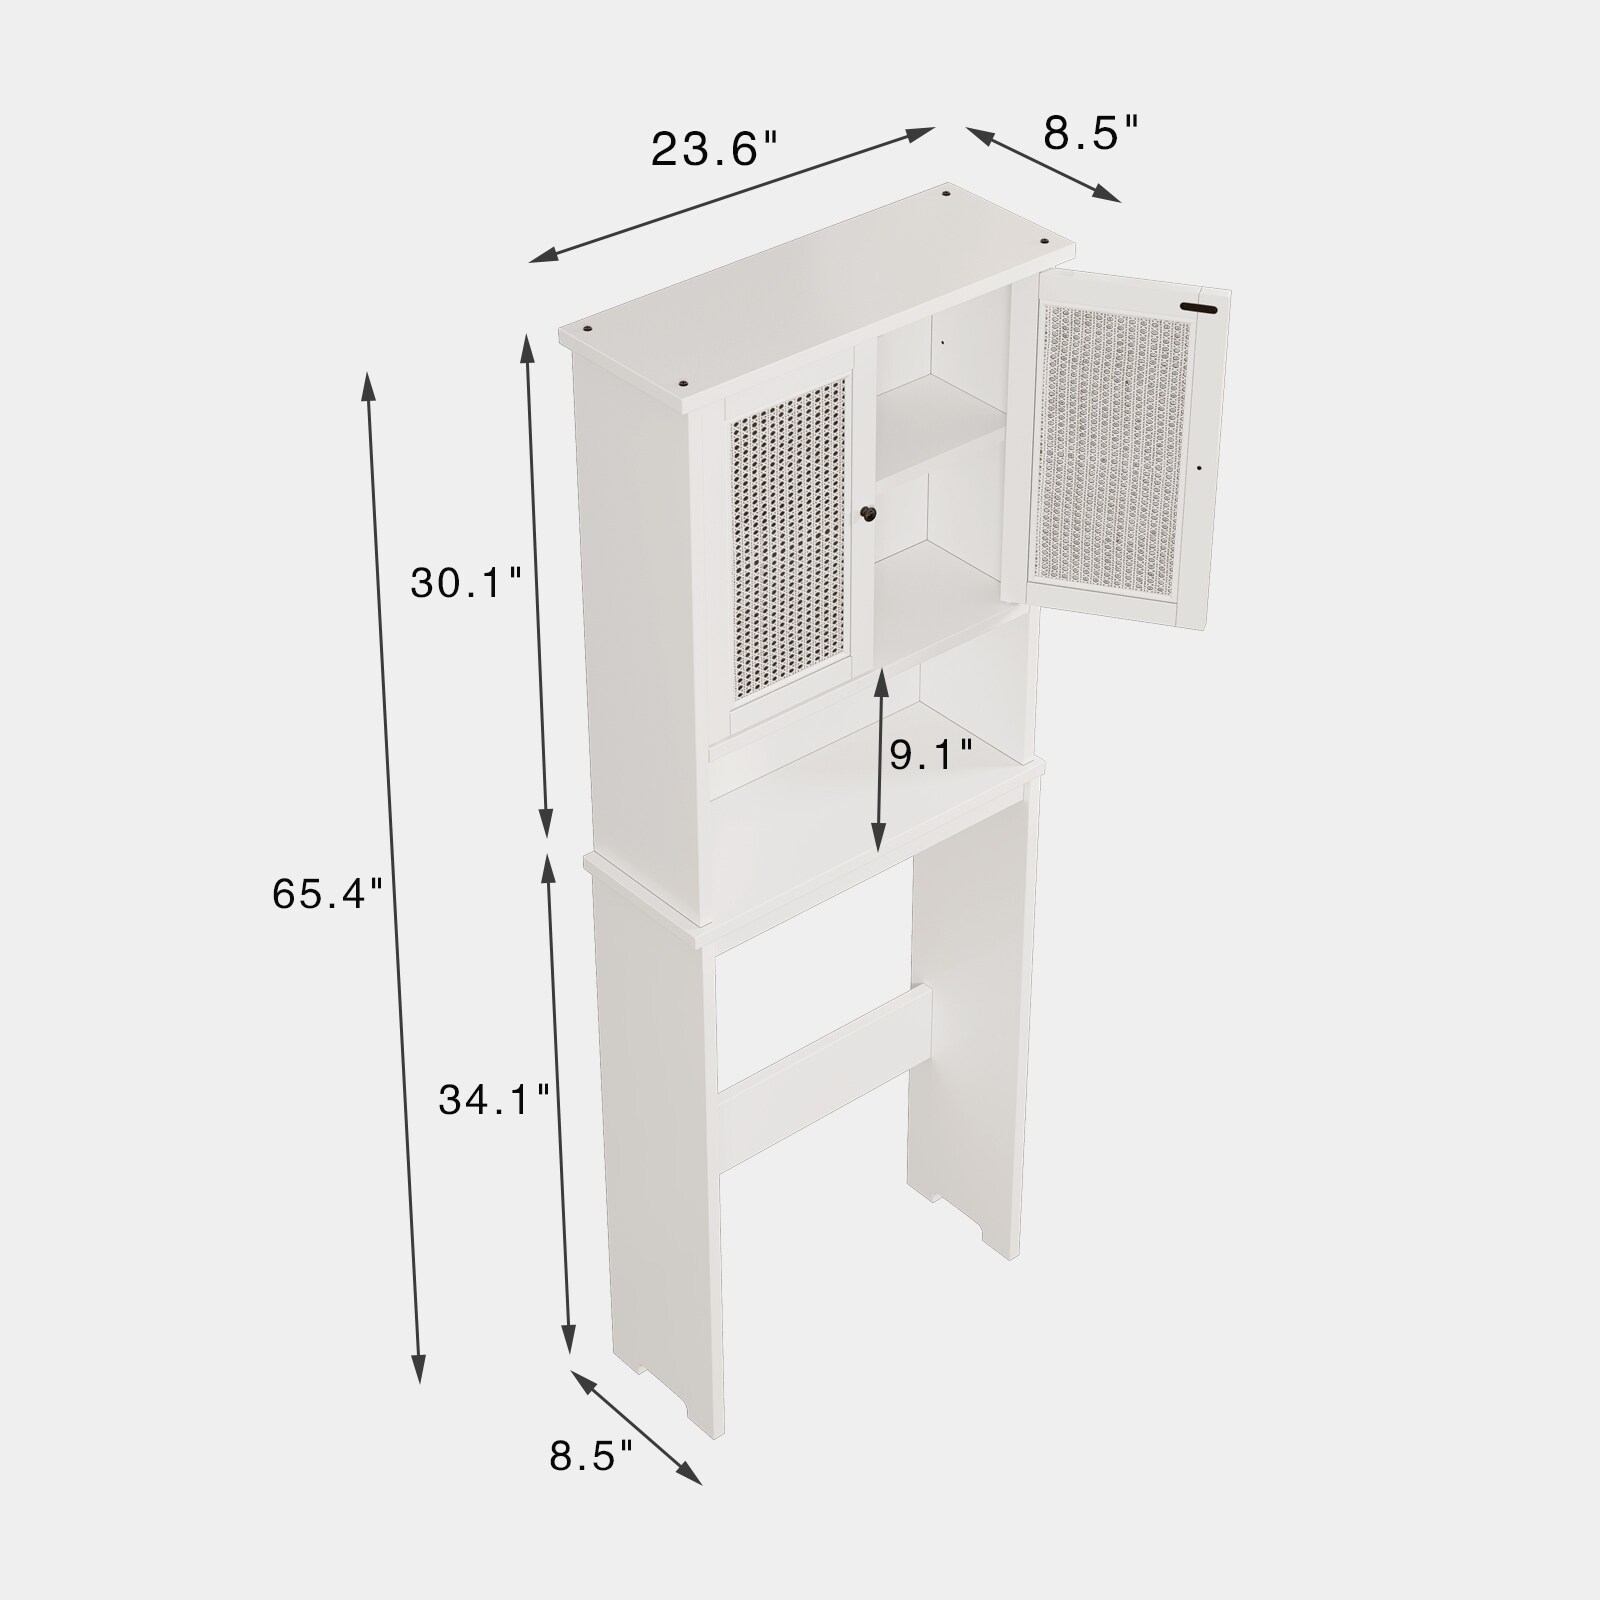 Jarenie 23.6-in W x 65.4-in H 3-Tier Freestanding Mdf Appliance Lift ...